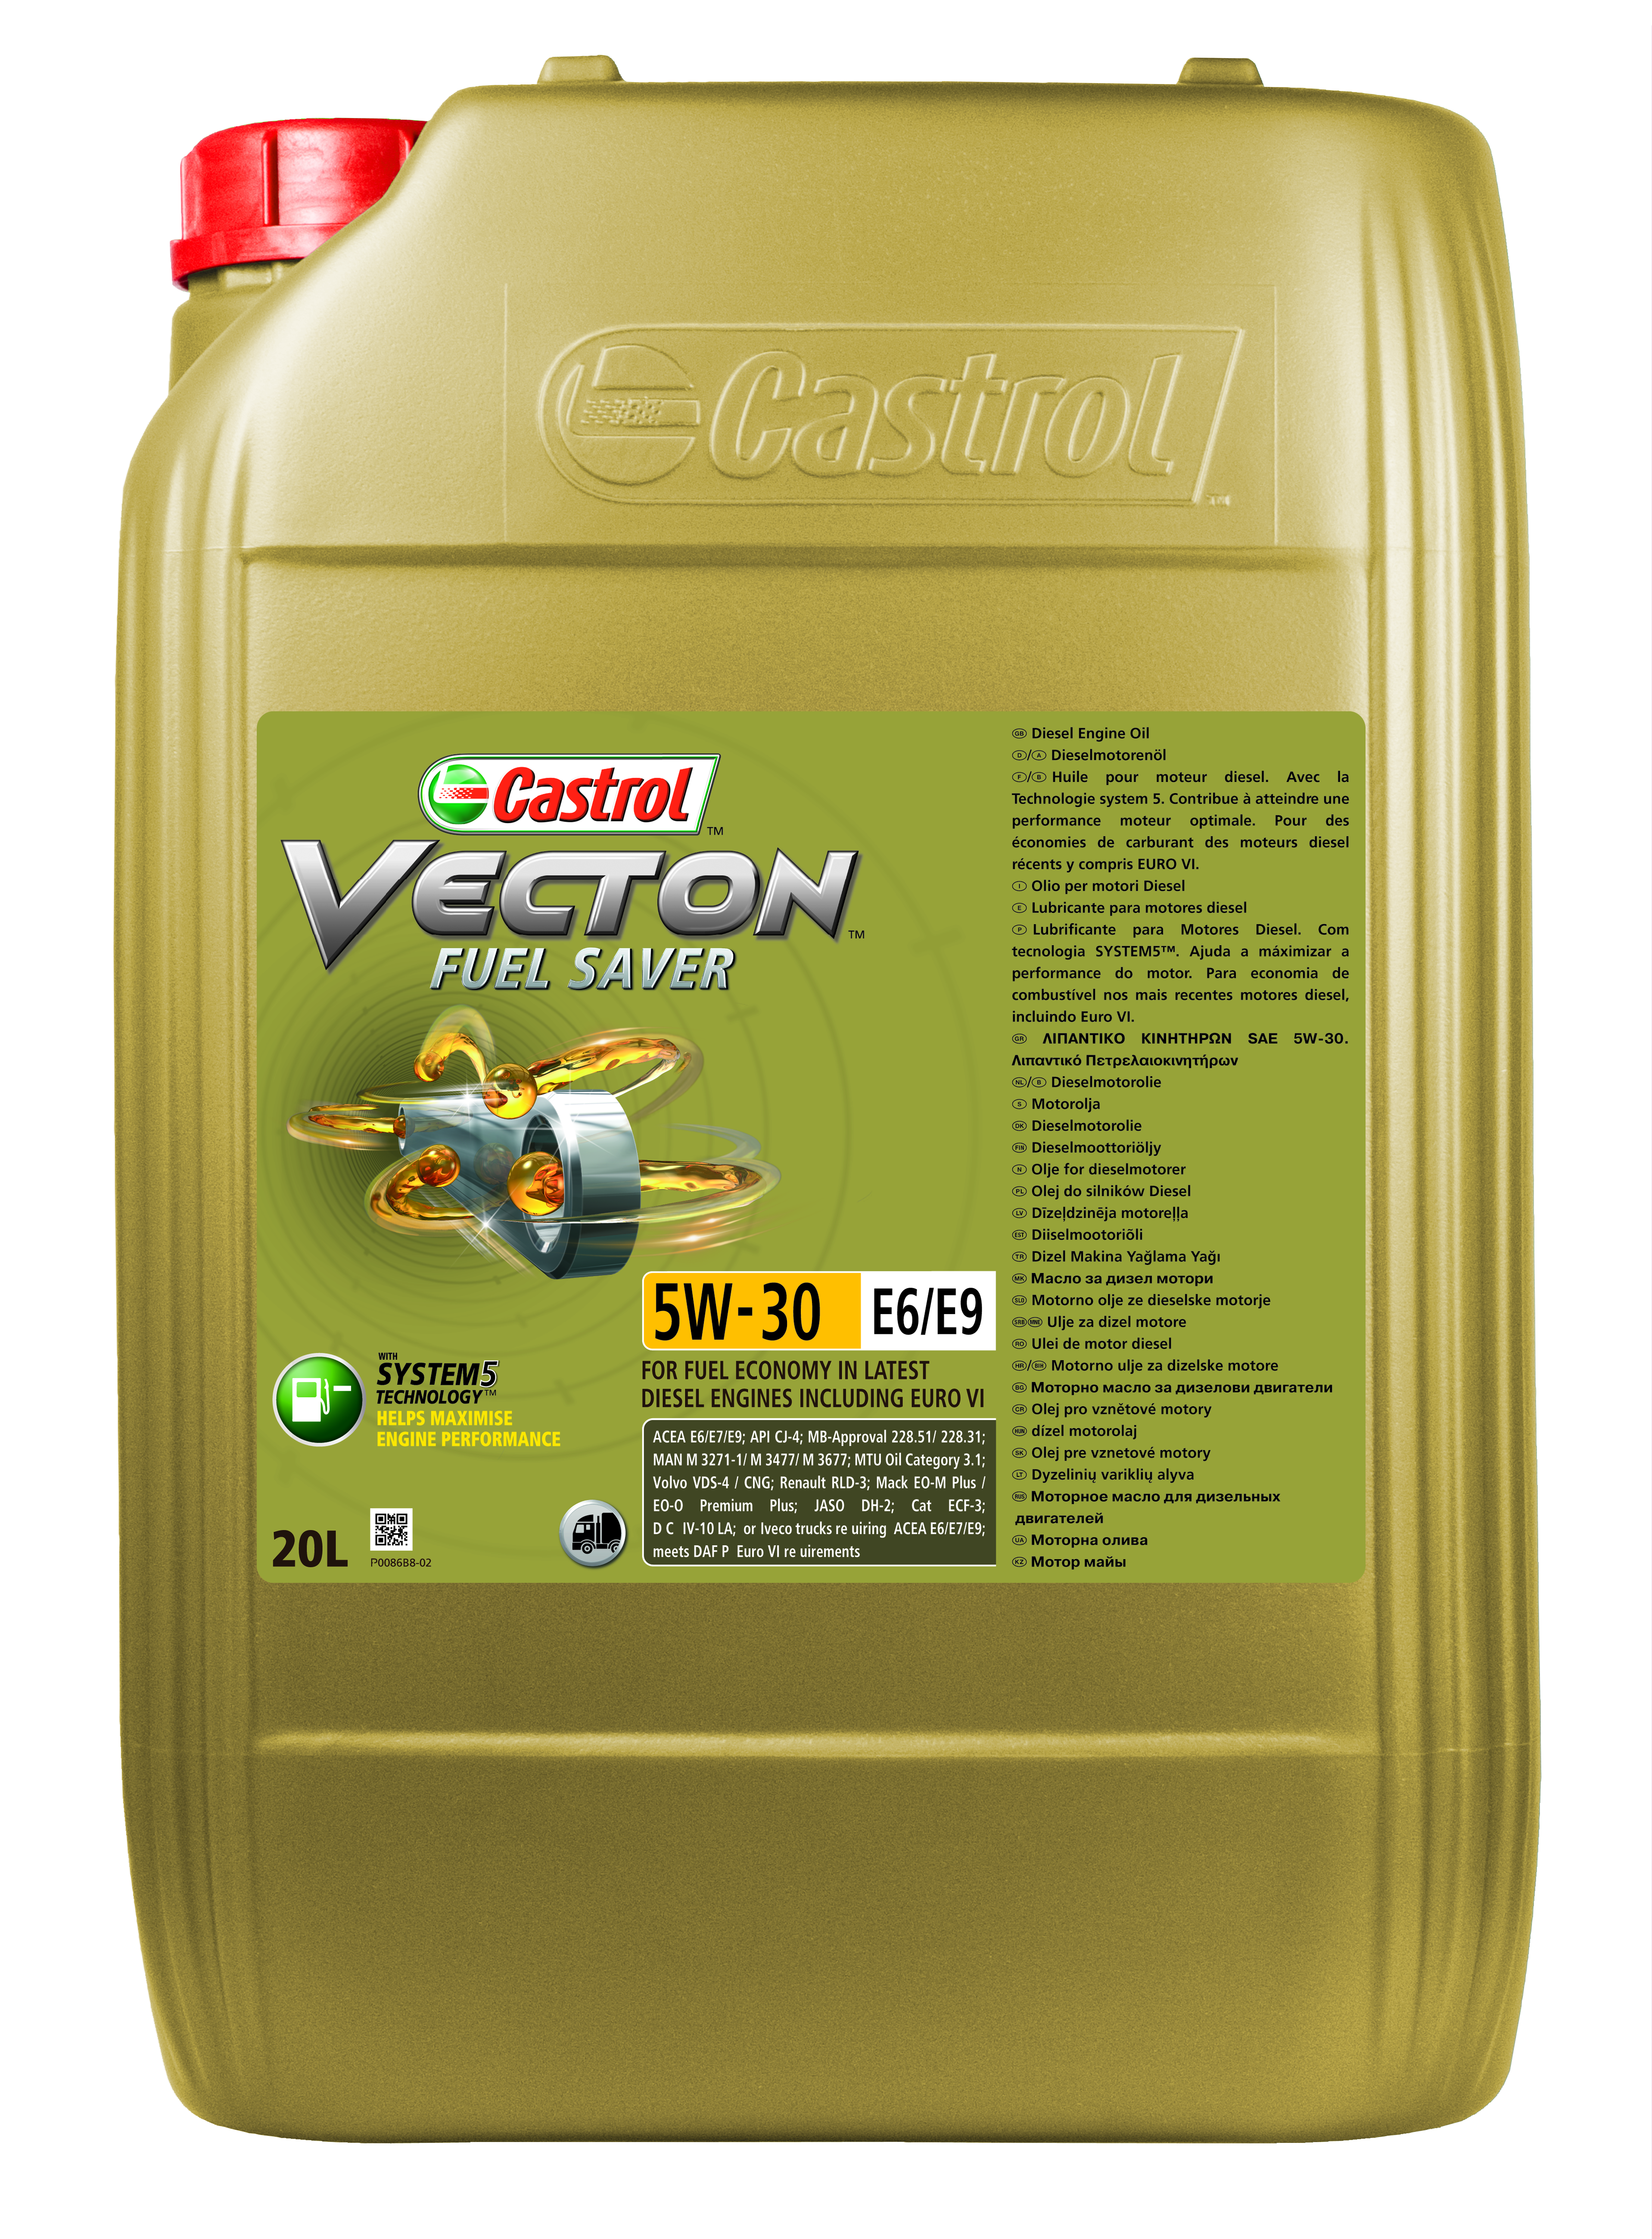 Vecton Fuel Saver 5W-30 E6/E9 20L